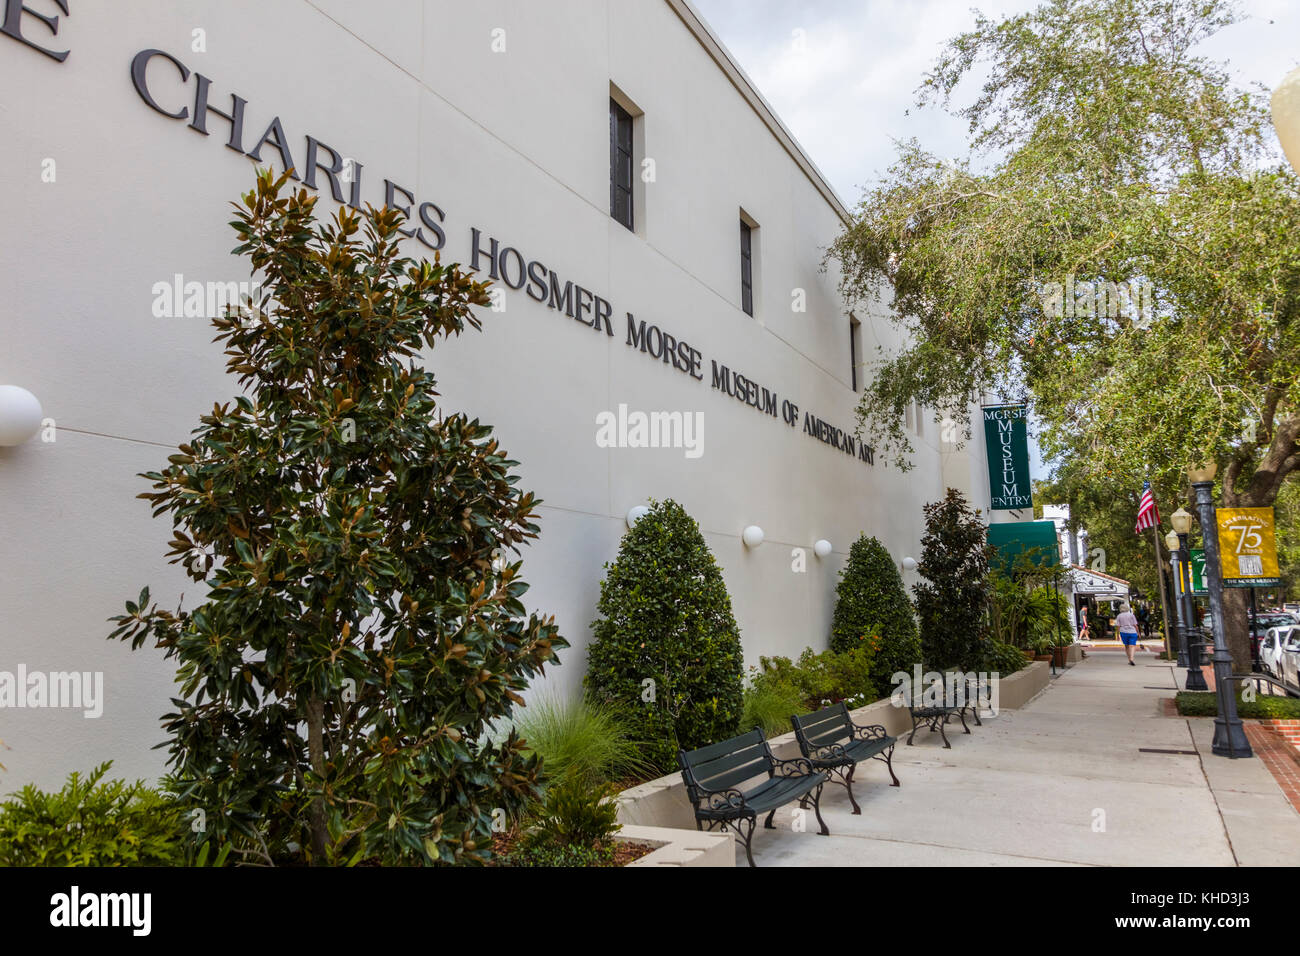 Le Charles Hosmer Morse Museum of American Art de Park Avenue, à Winter Park florida united states Banque D'Images